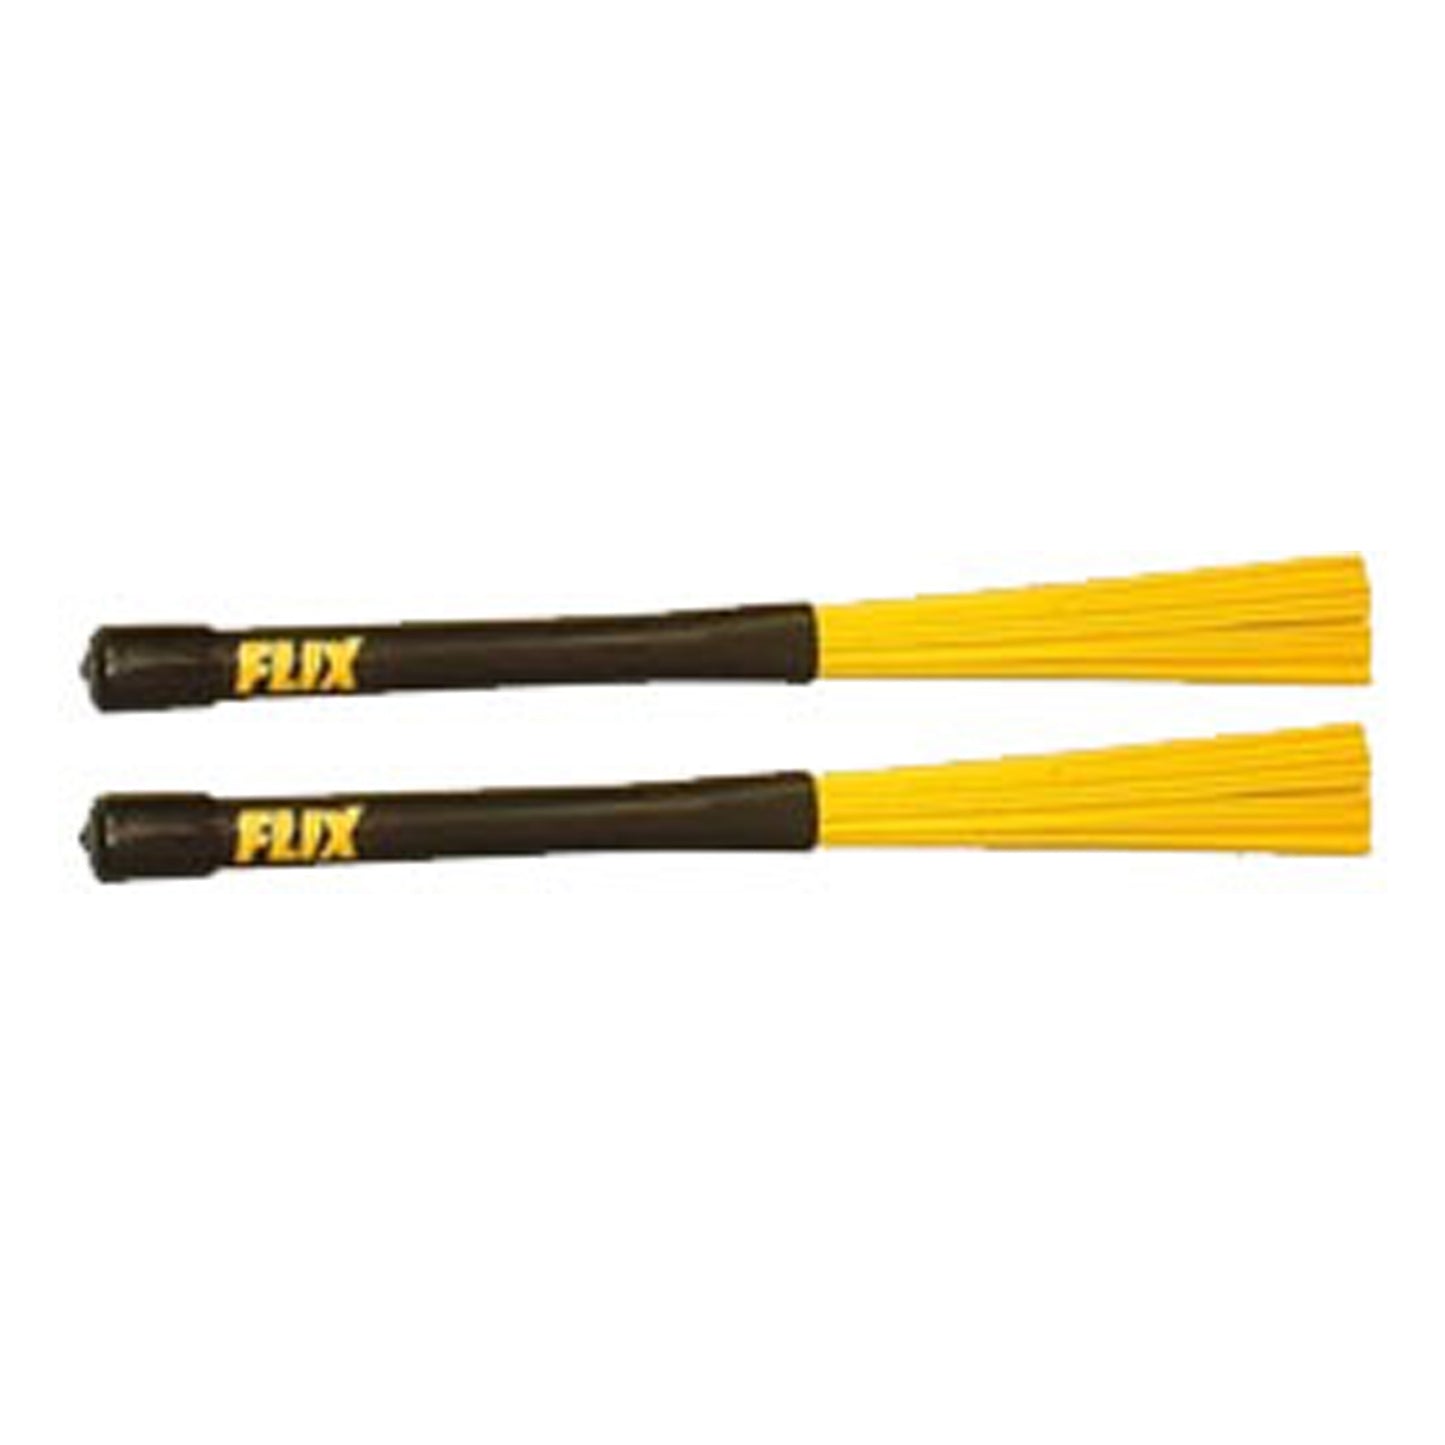 Flix Retractable Yellow Fiber Brushes